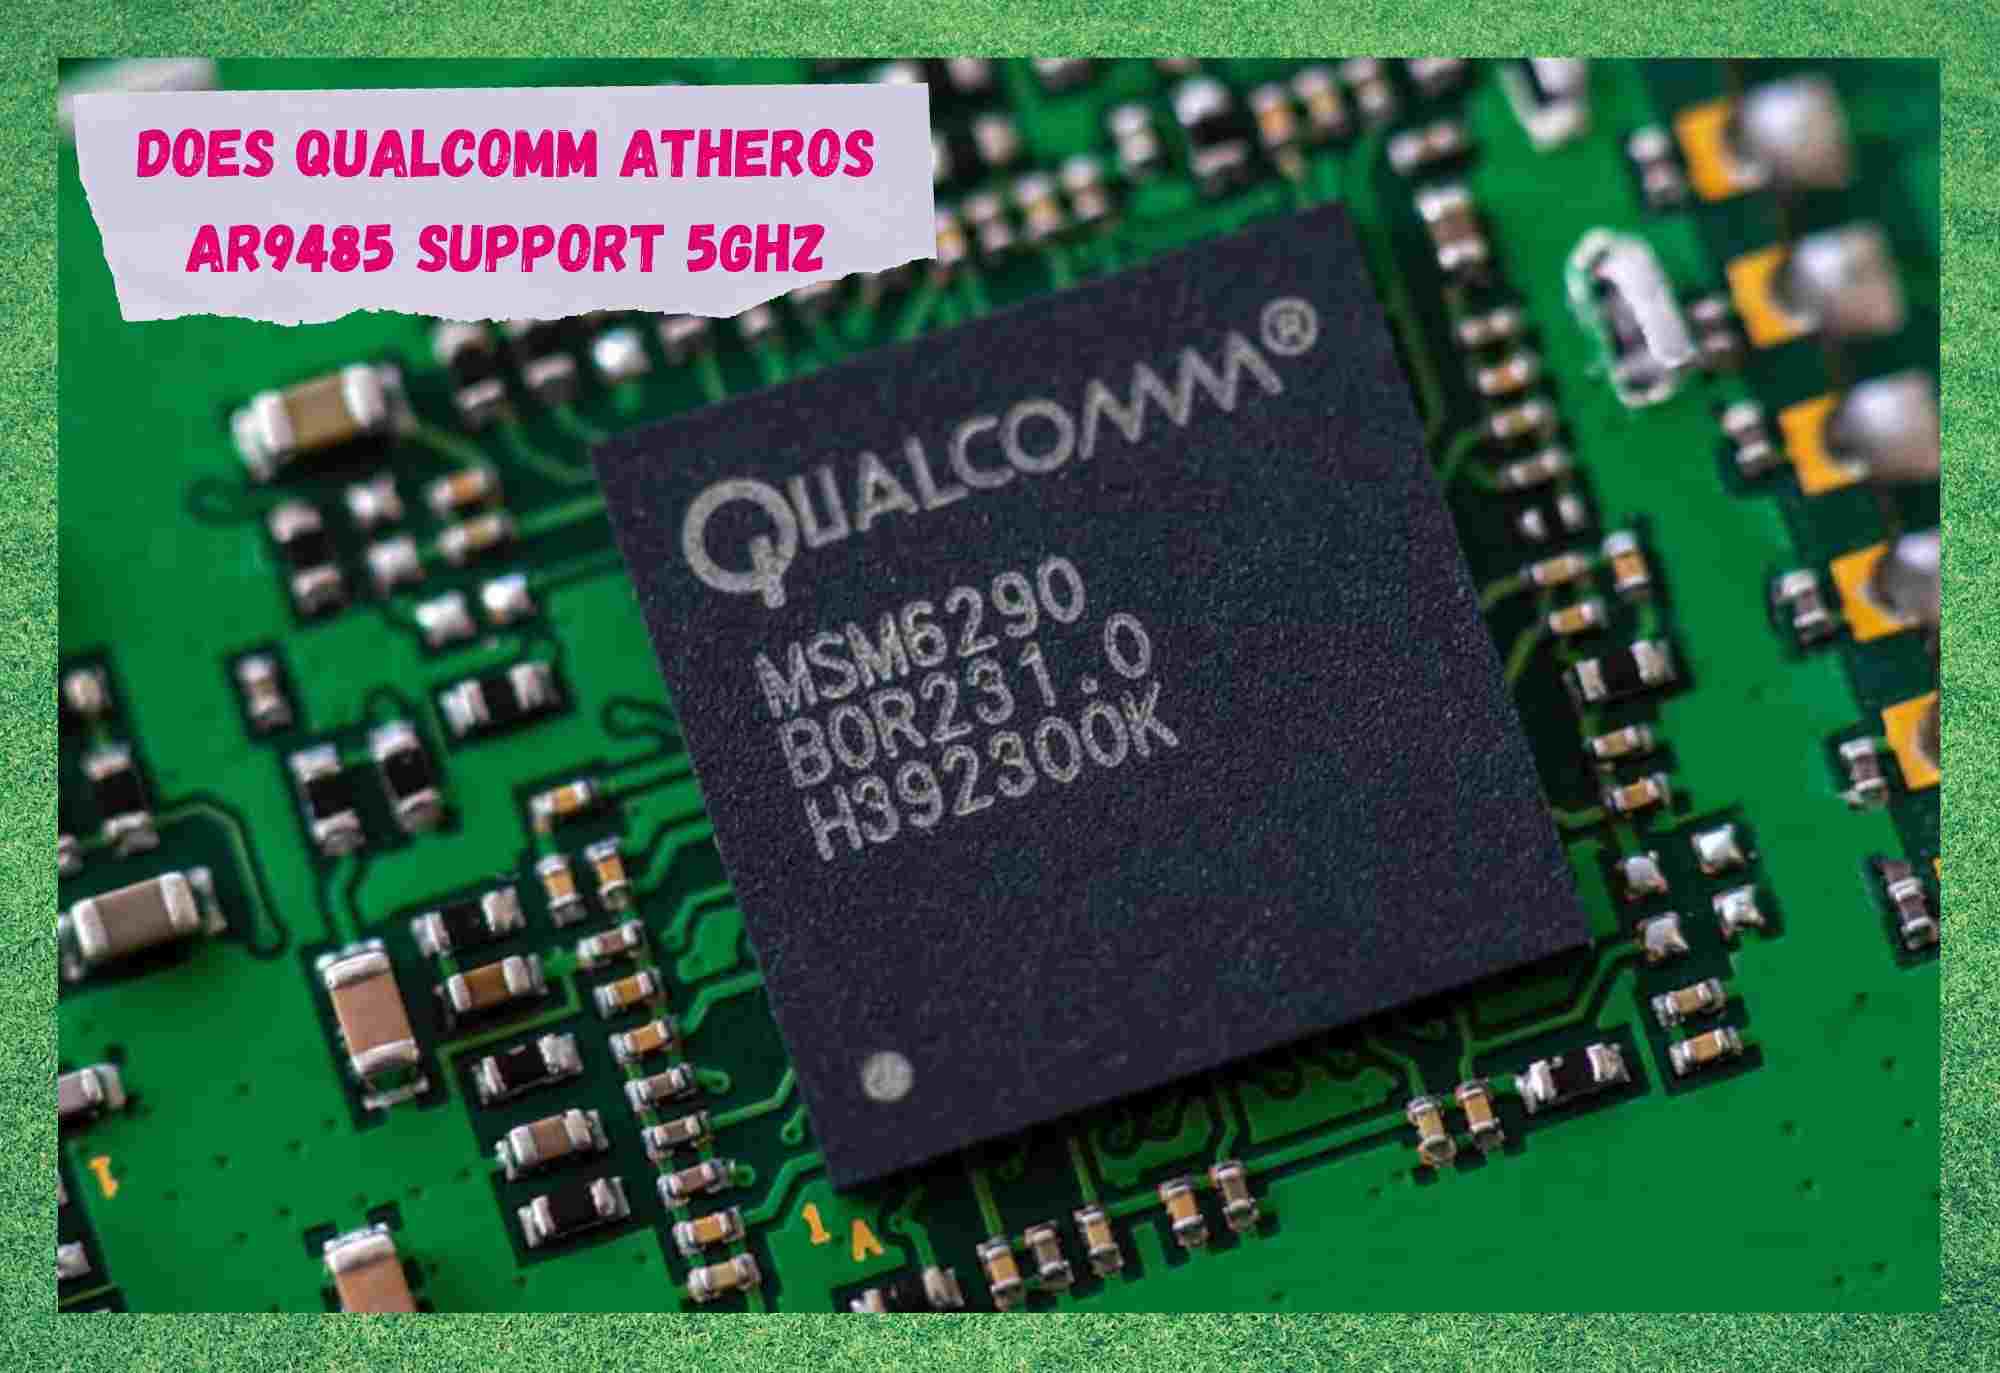 Támogatja a Qualcomm Atheros AR9485 az 5GHz-et?